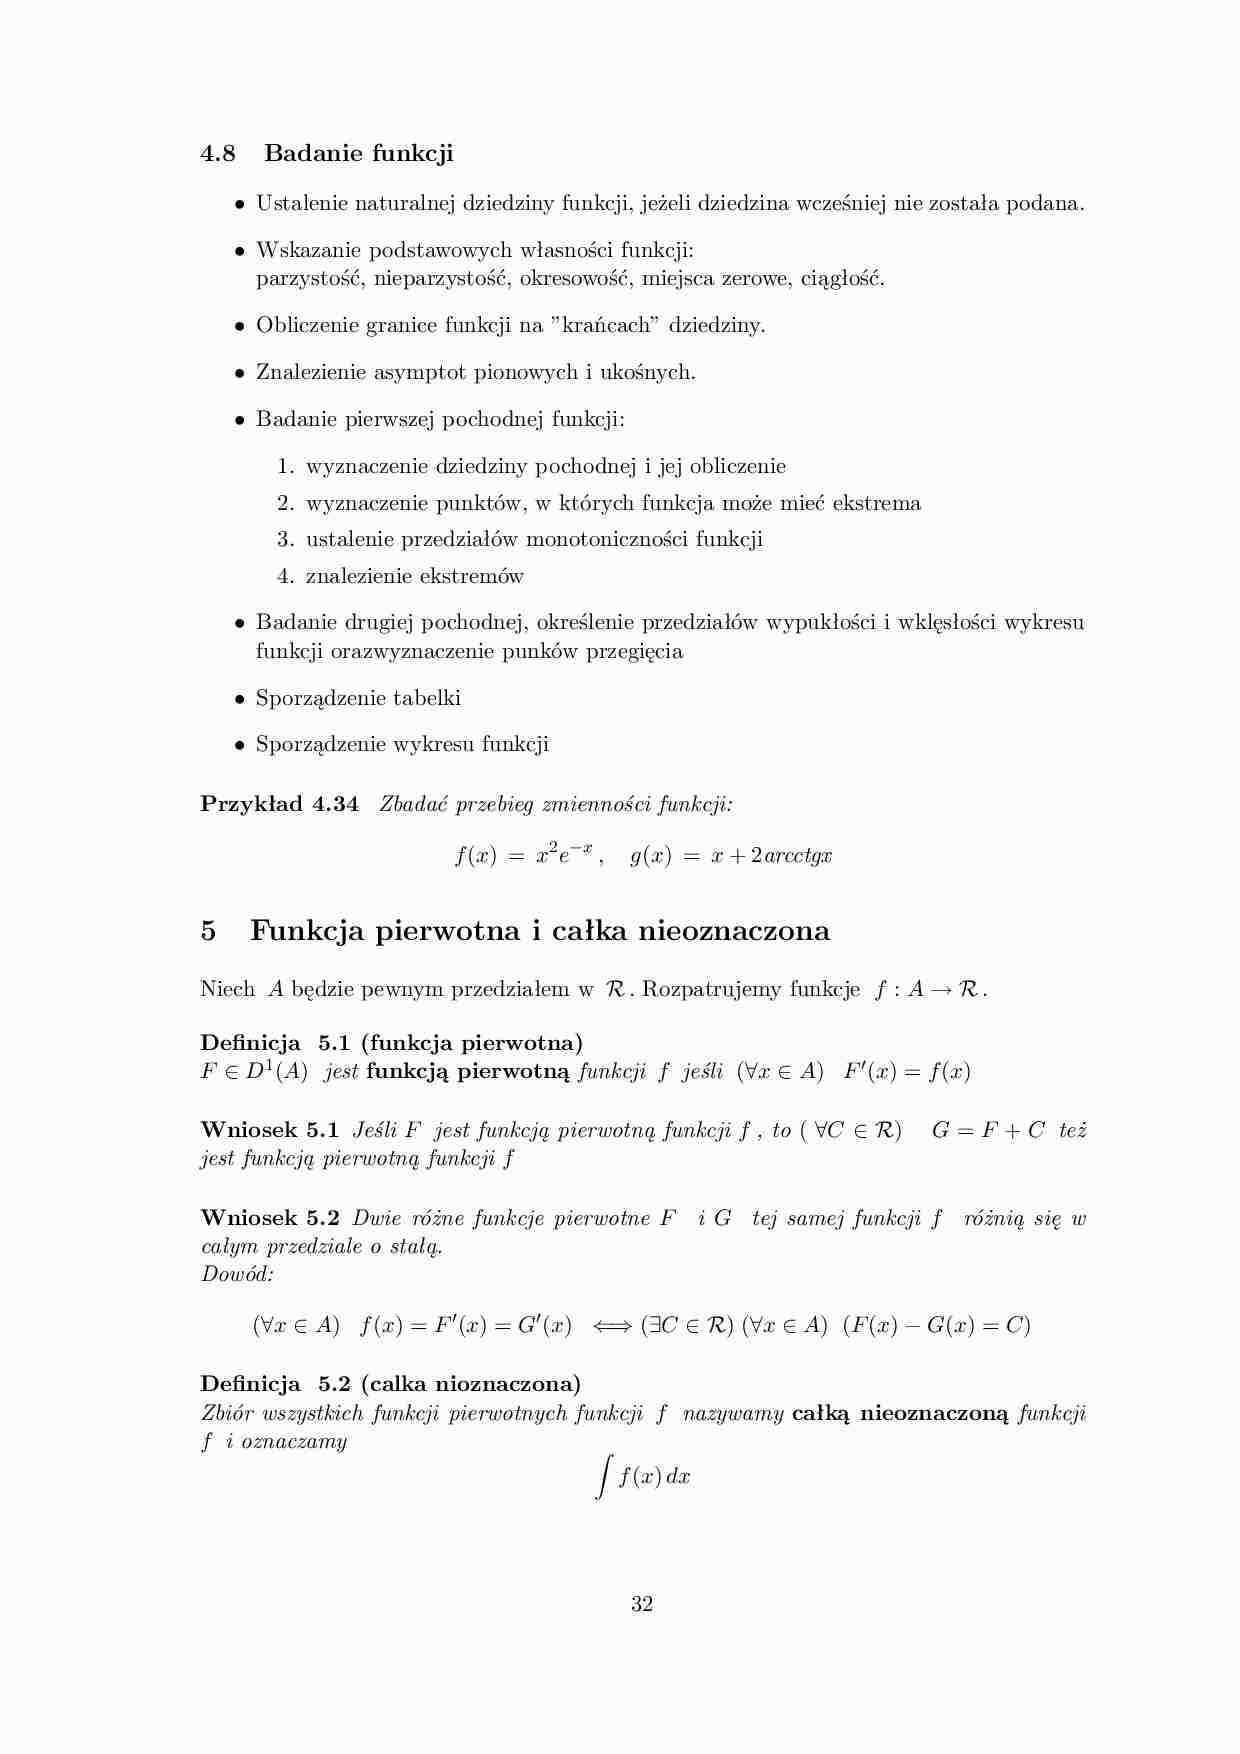 Badanie funkcji - omówienie - Funkcja pierwotna i całka nieoznaczona - strona 1